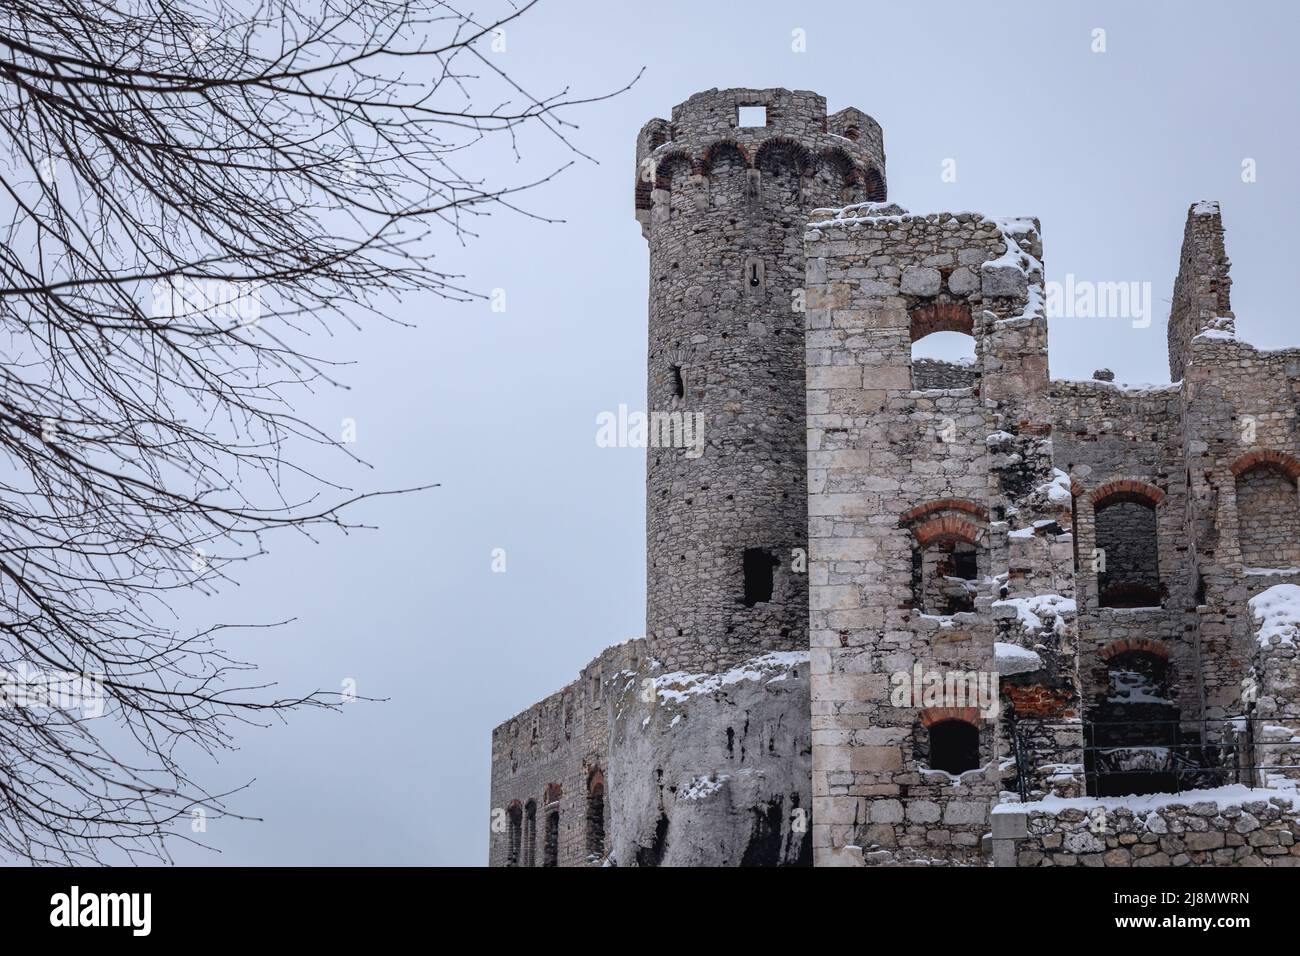 Tour du château d'Ogrodzieniec dans le village de Podzamcze, région d'Upland de Cracovie-Czestochowa, Pologne, 4K images Banque D'Images